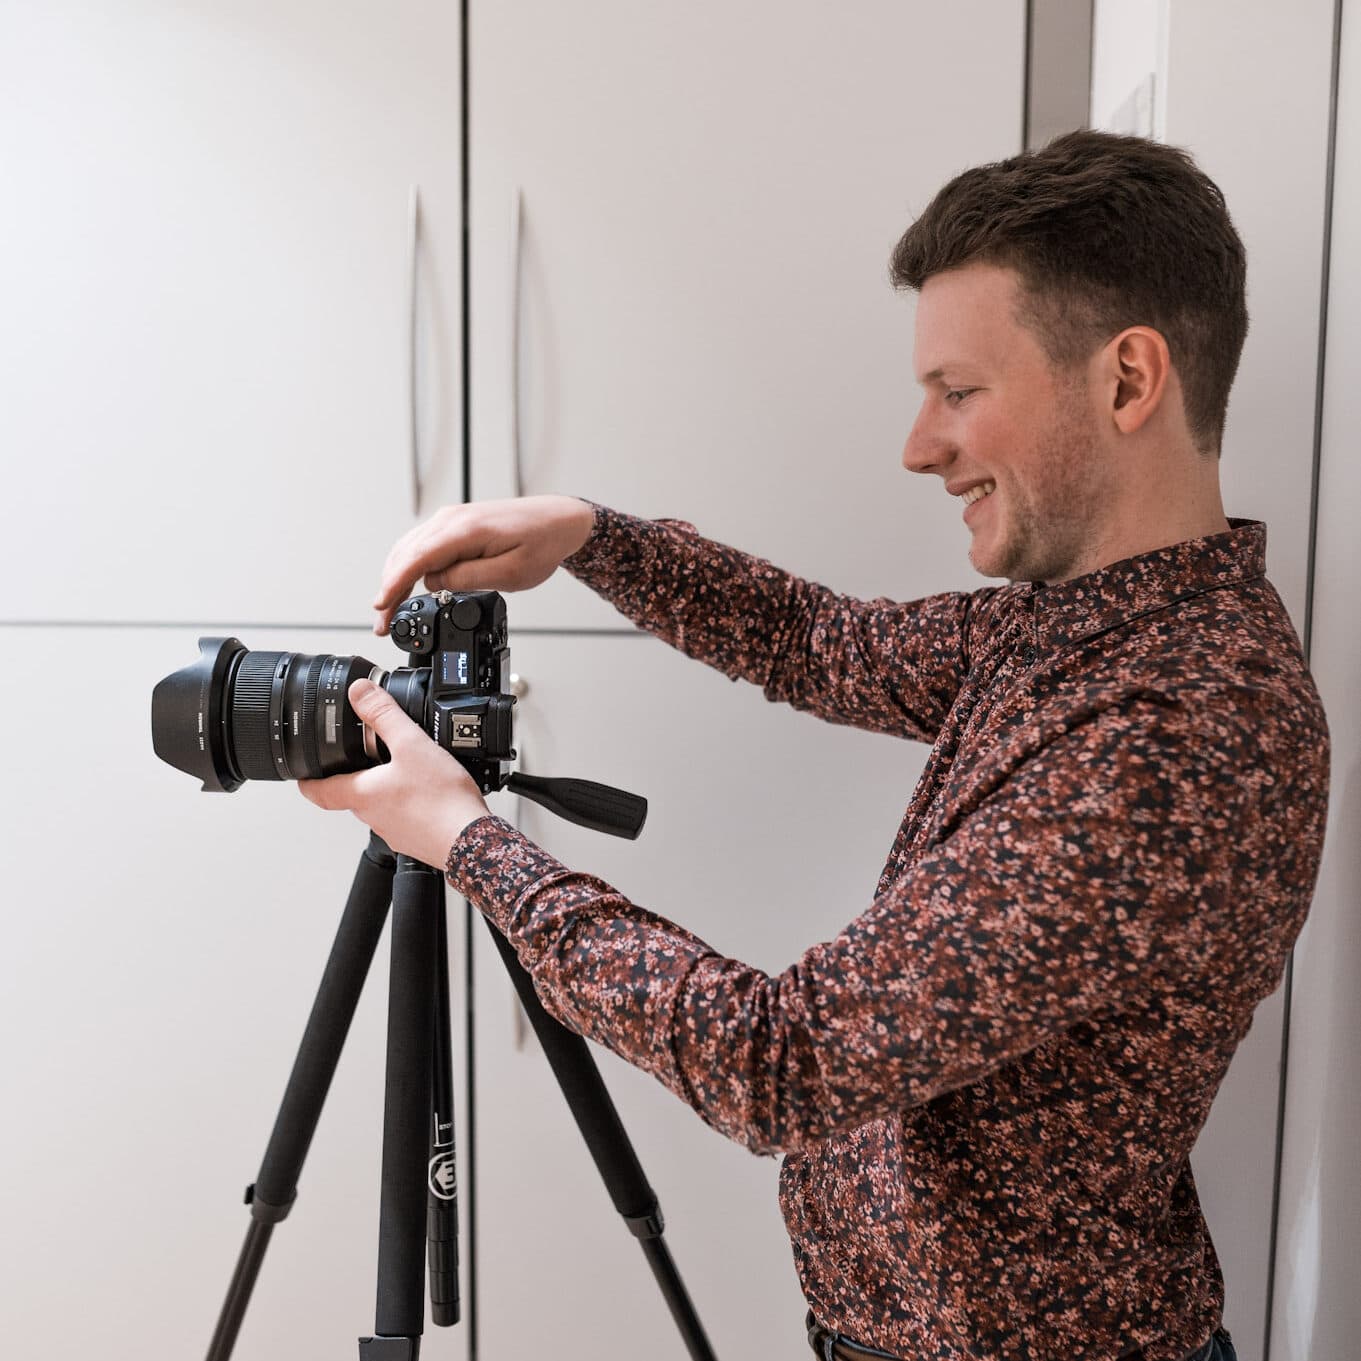 Andreas beim Shooting - Foto als Geschäftsbereich von hoch3media